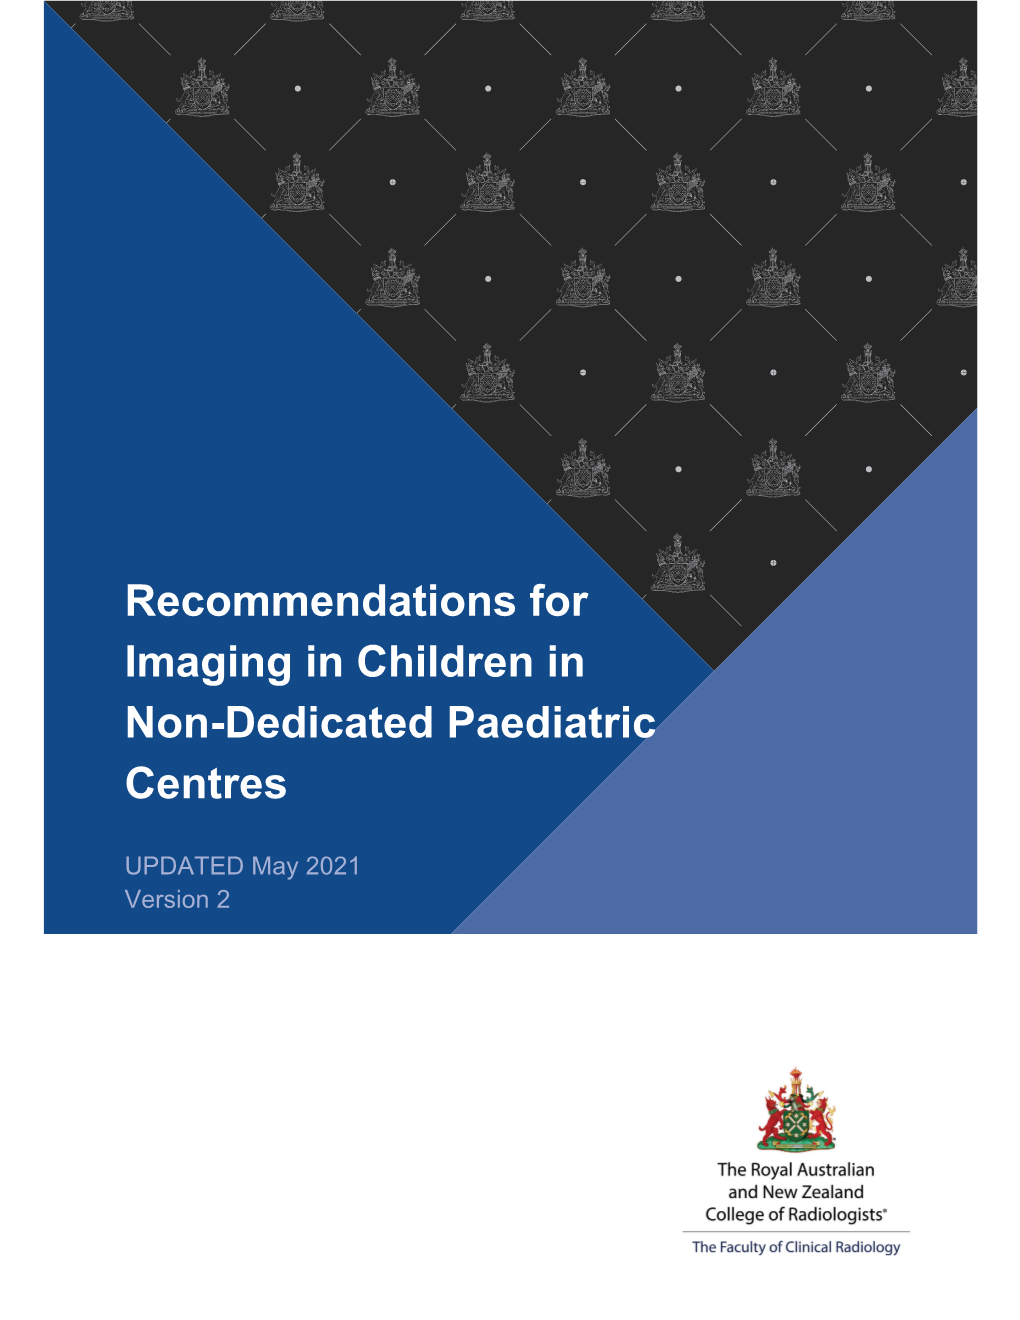 Imaging in Children in Non-Dedicated Paediatric Centres